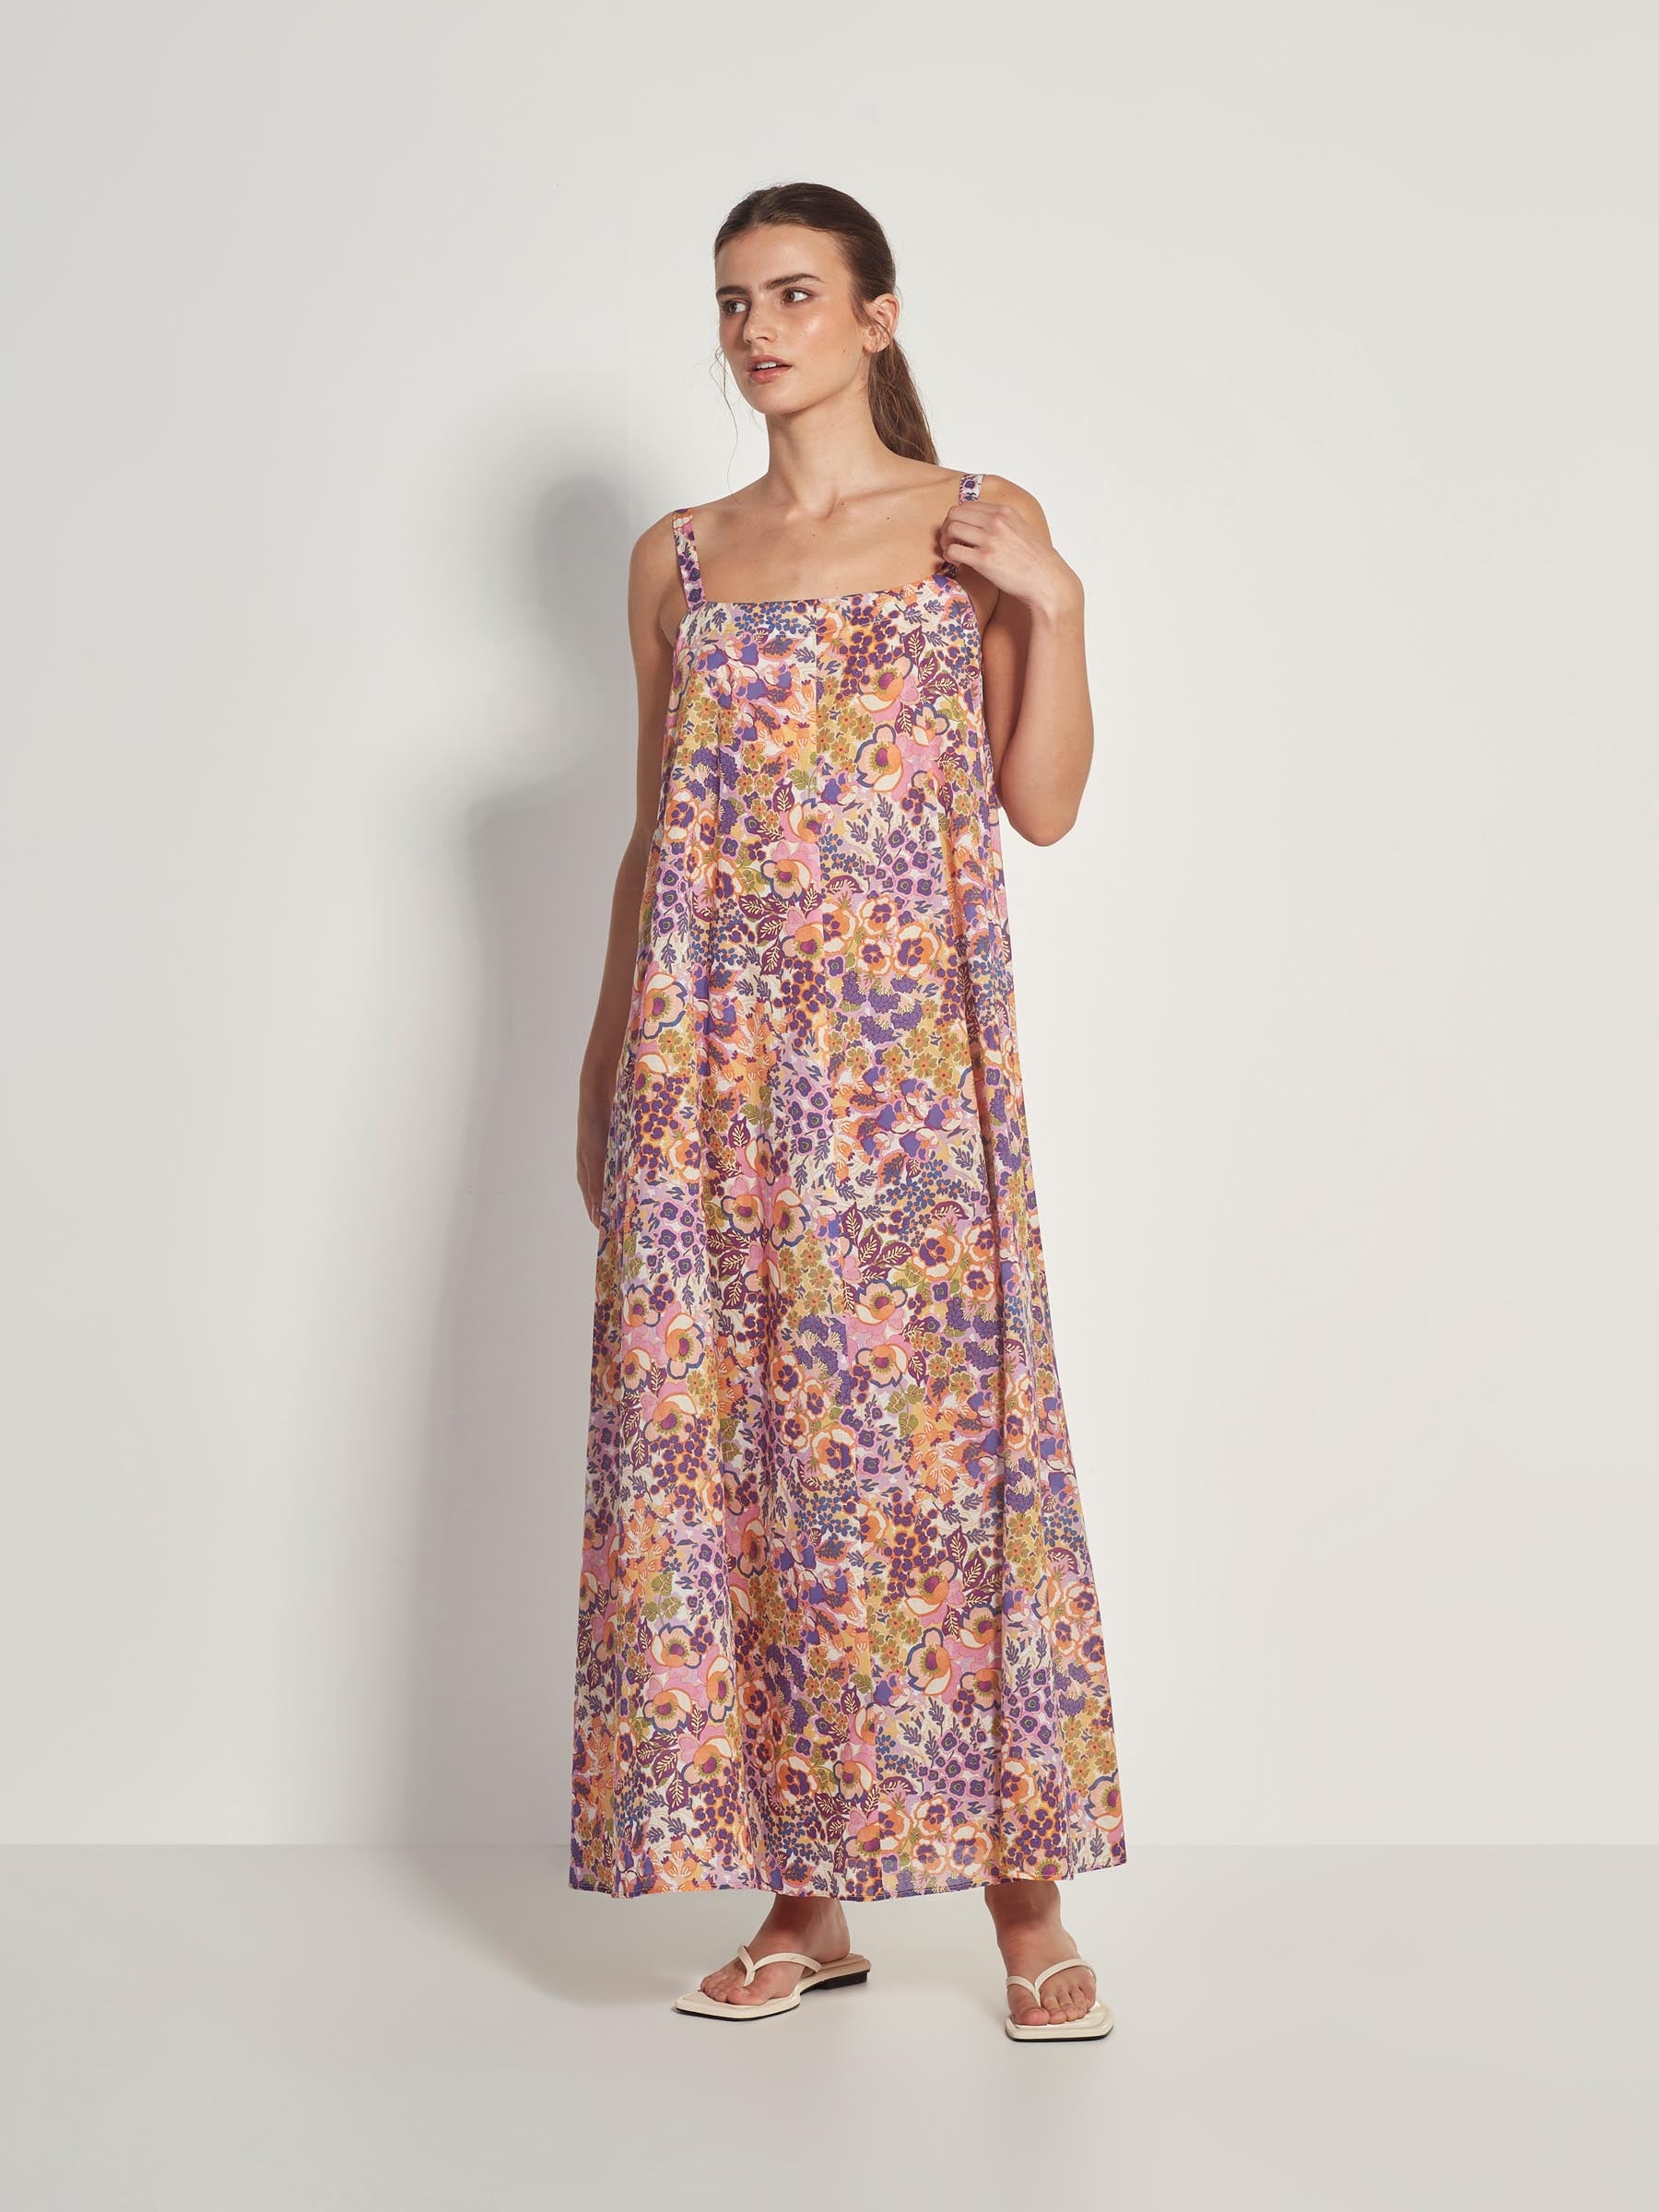 Adaline Dress (Garden Party Cotton) Botanica